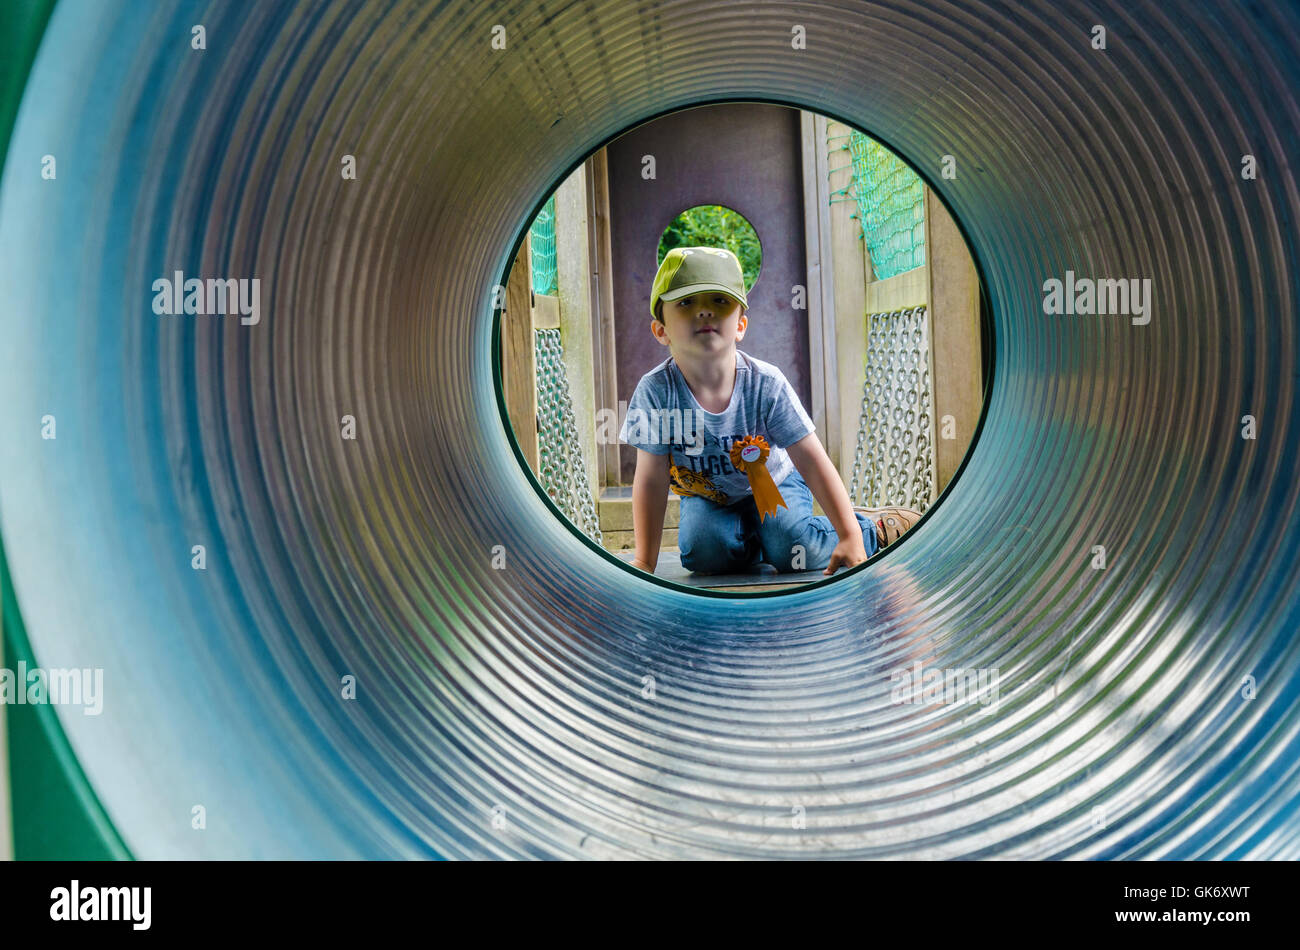 Un jeune garçon regarde à travers un tunnel dans une aire de jeux pour enfants. Banque D'Images